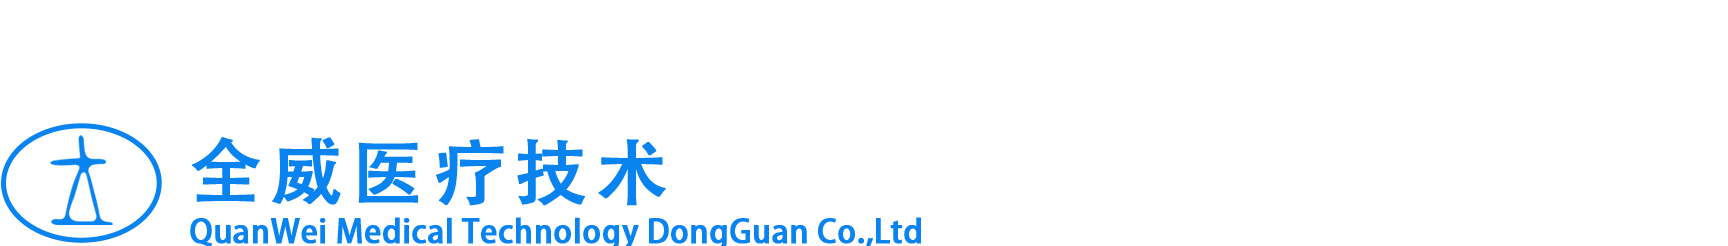 Quanwei Medical & Technology Co., Ltd